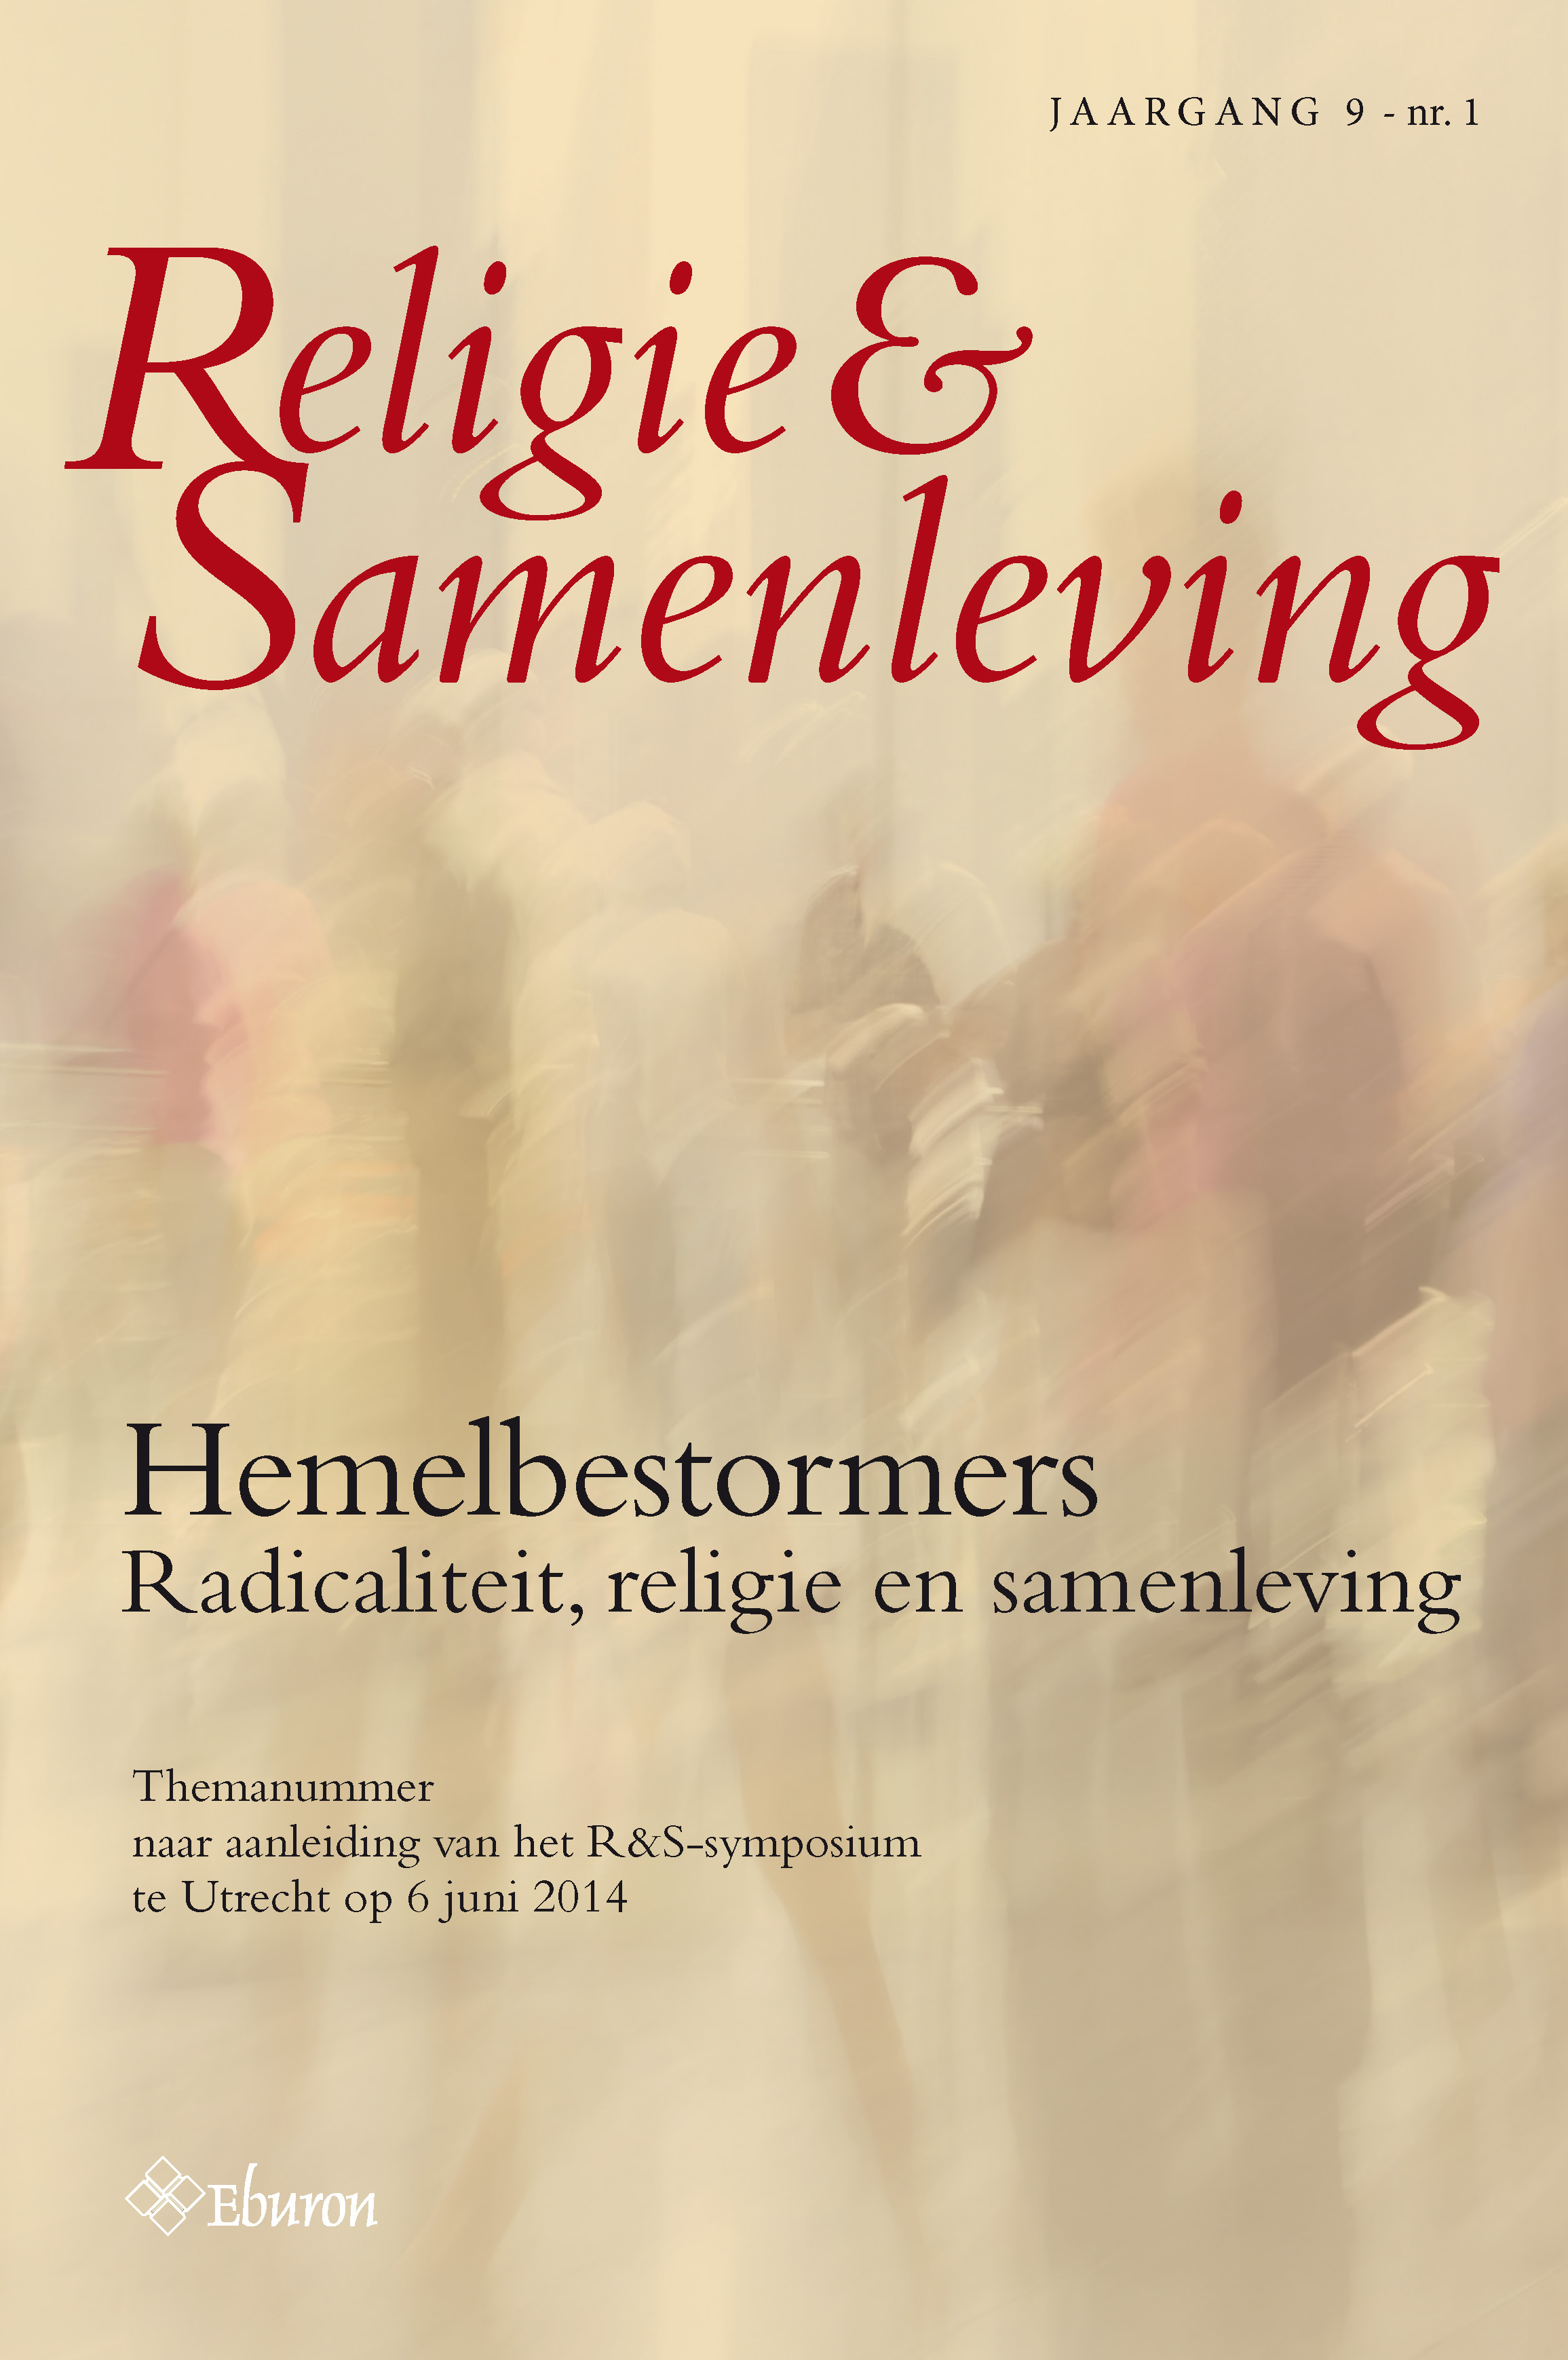 					Toon Vol 9 Nr 1 (2014): Hemelbestormers. Radicaliteit, religie en samenleving
				